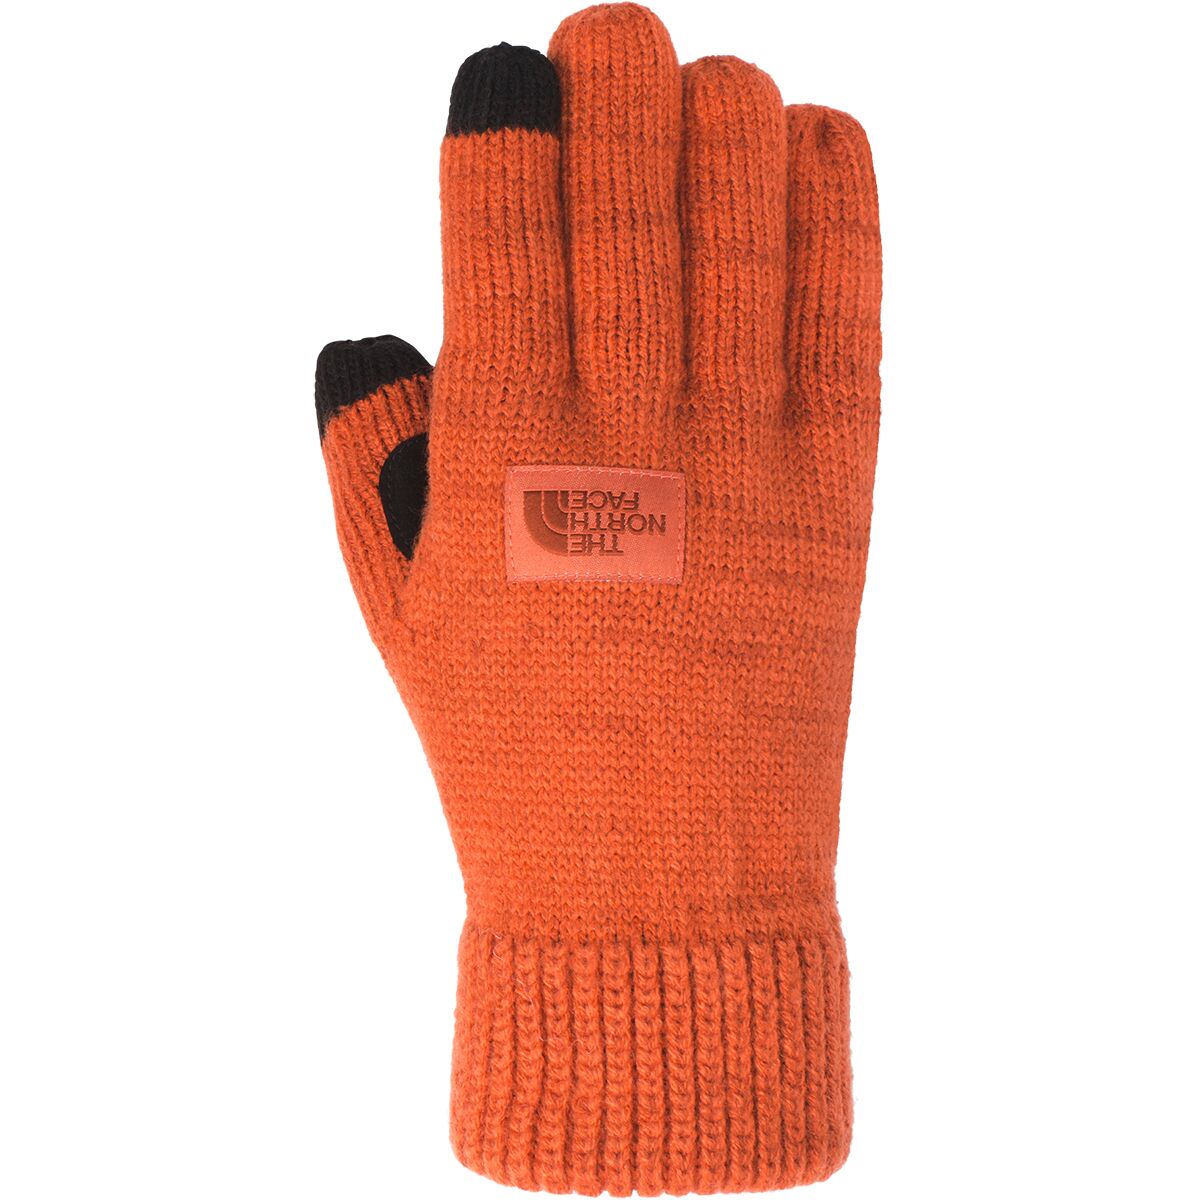 etip salty dog knit tech gloves